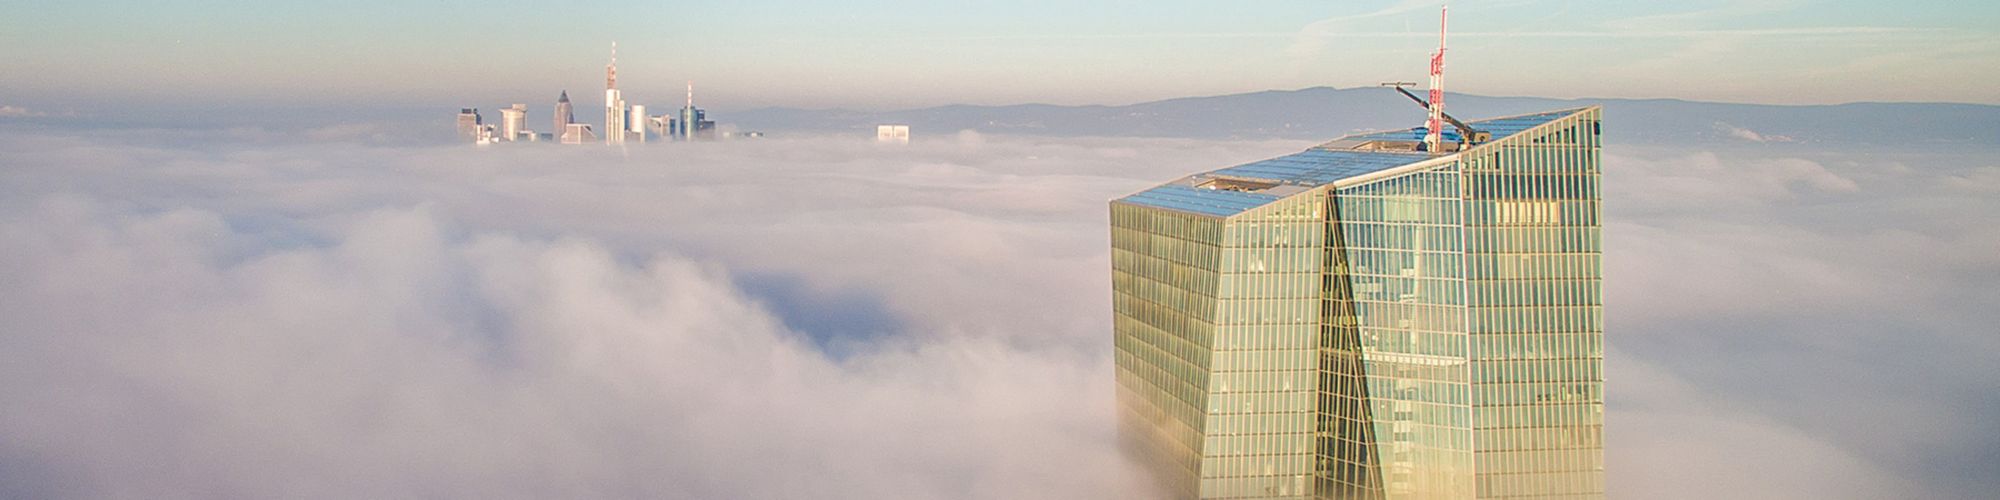 EZB-Hochhaus über Wolken